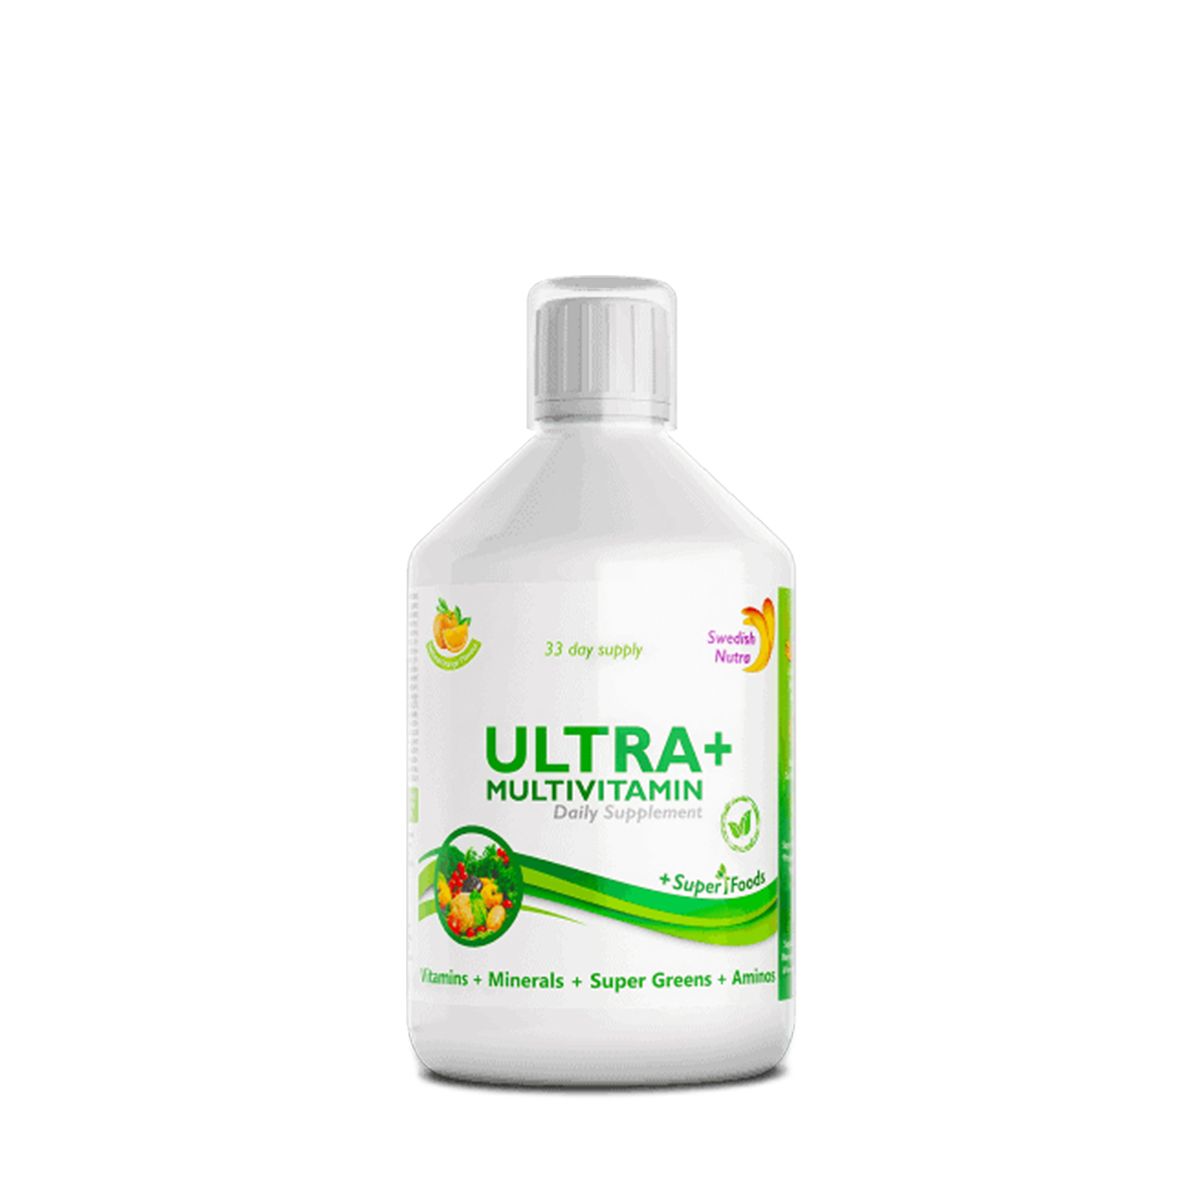 ULTRA+ folyékony multivitamin, Swedish Nutra Ultra+ Multivitamin, 500 ml